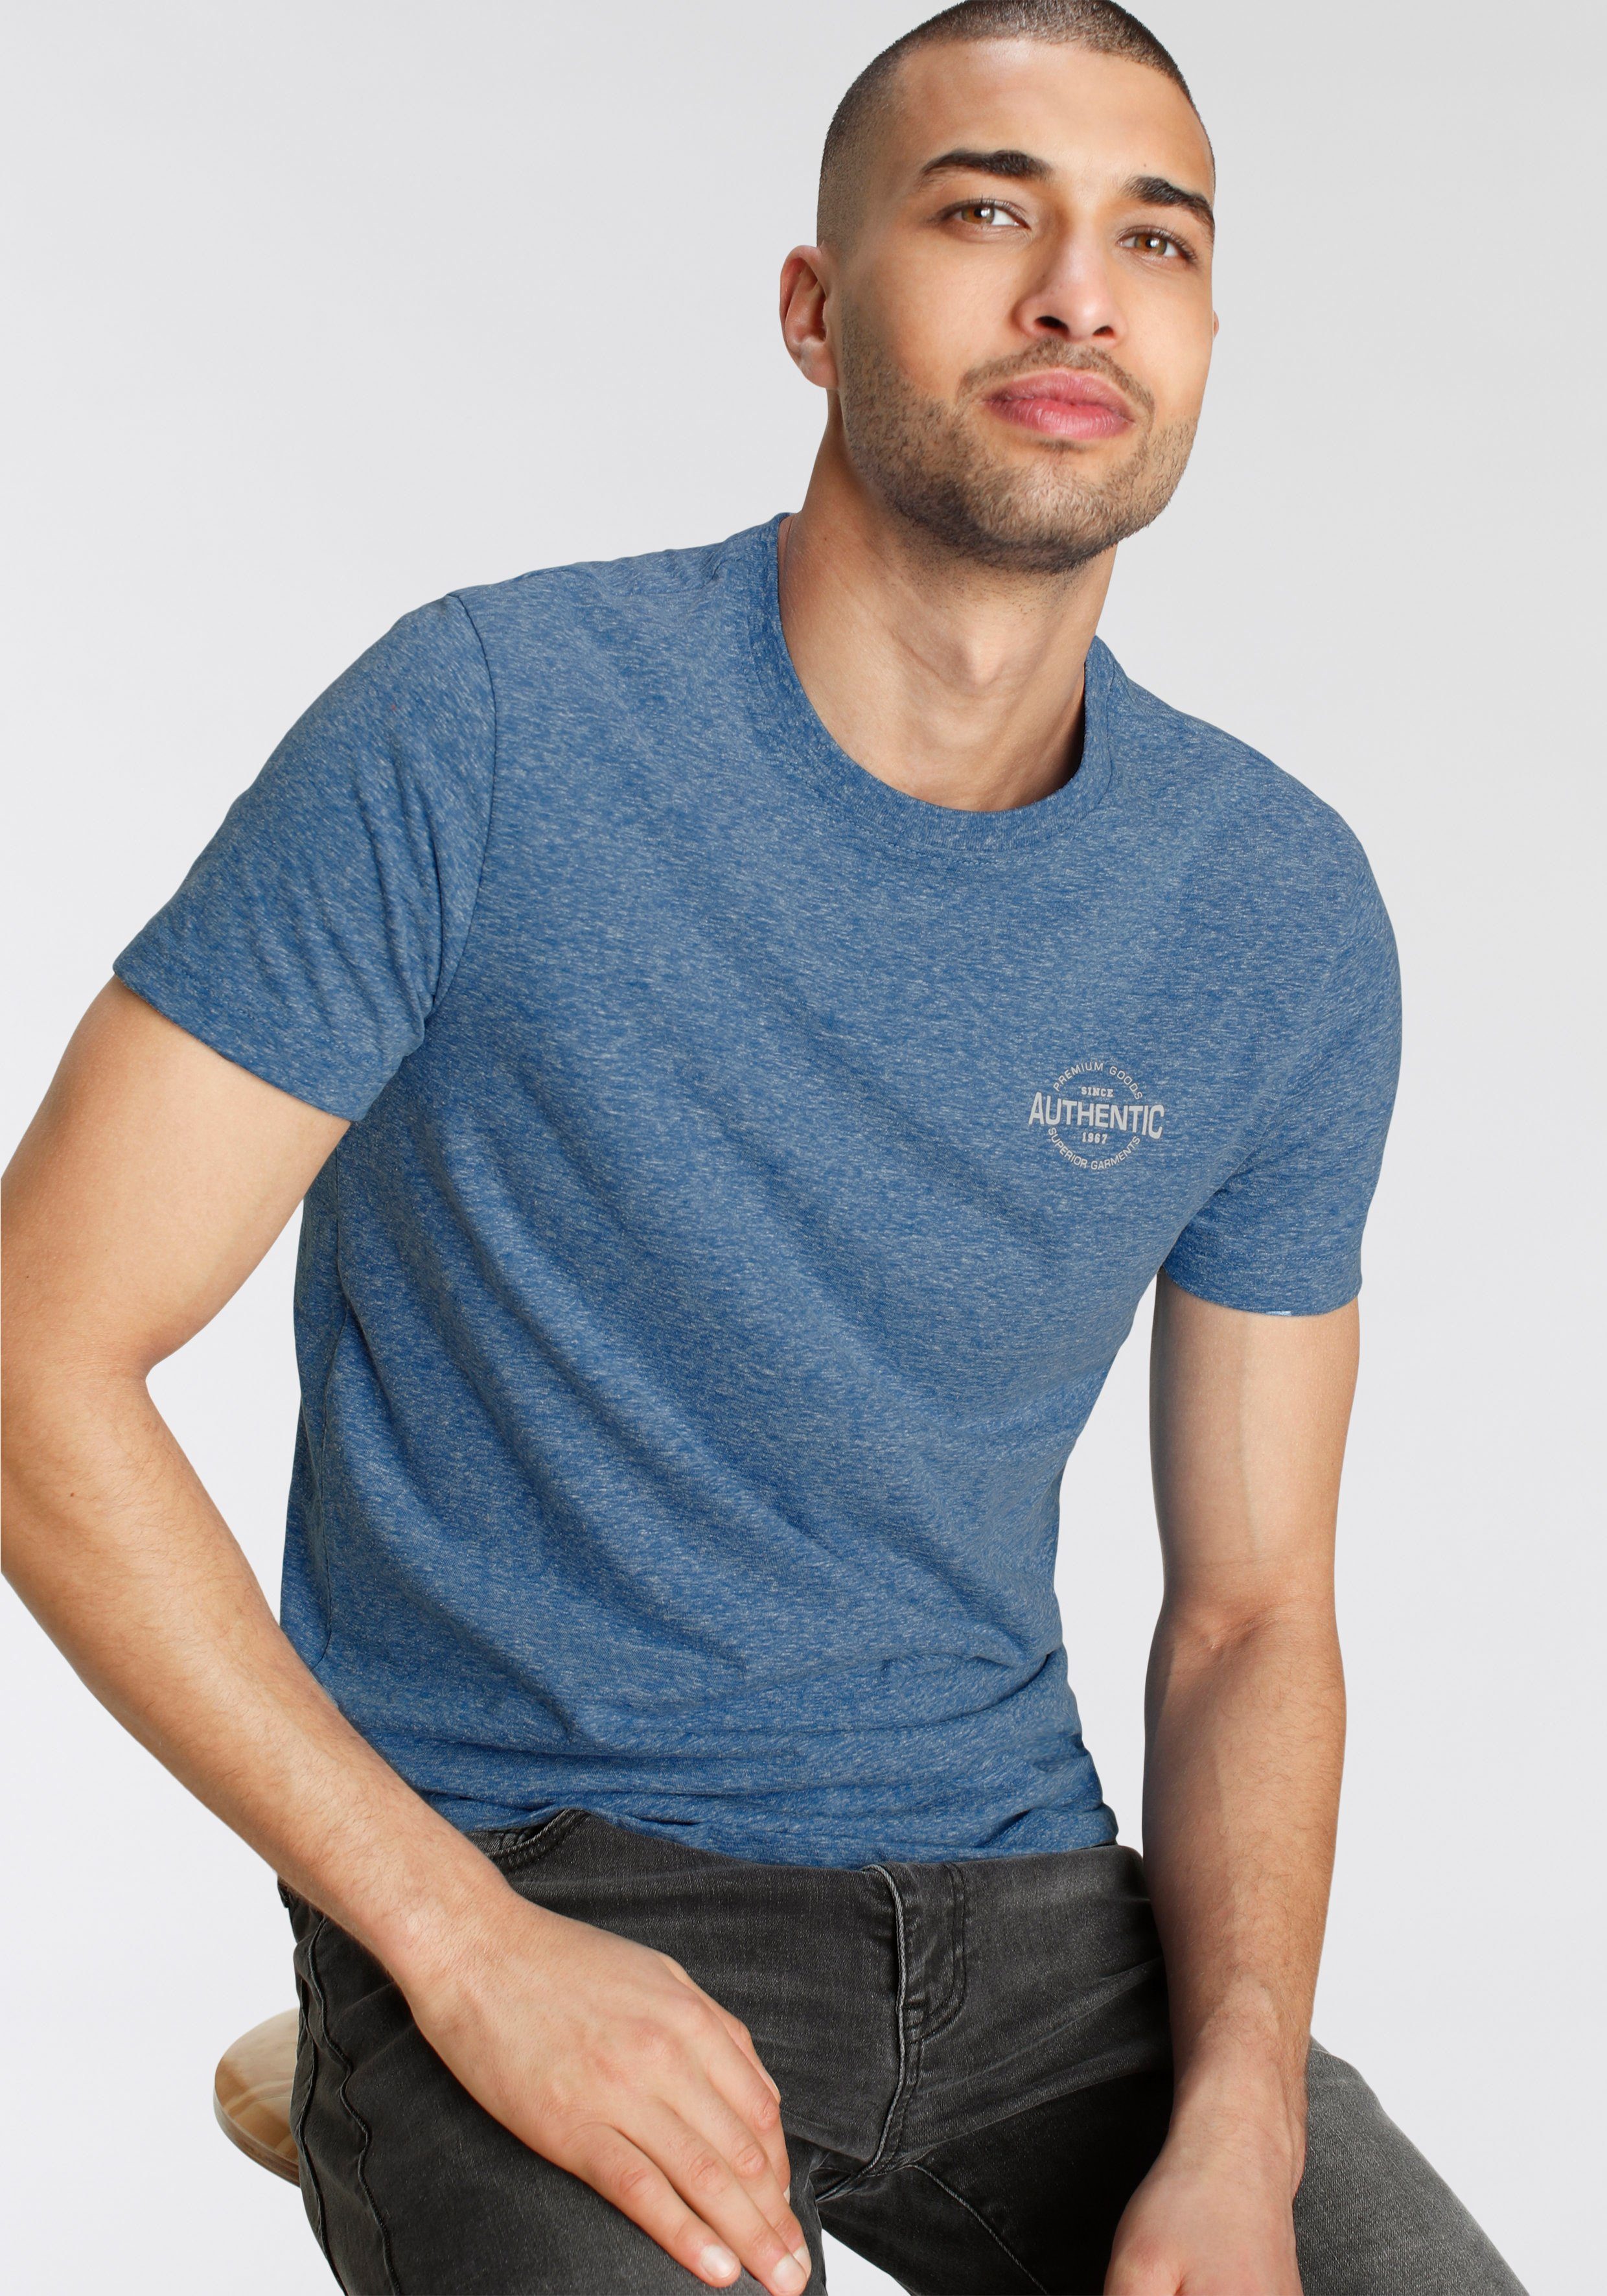 besonderer Melange meliert Print Logo blau und AJC T-Shirt mit Optik in